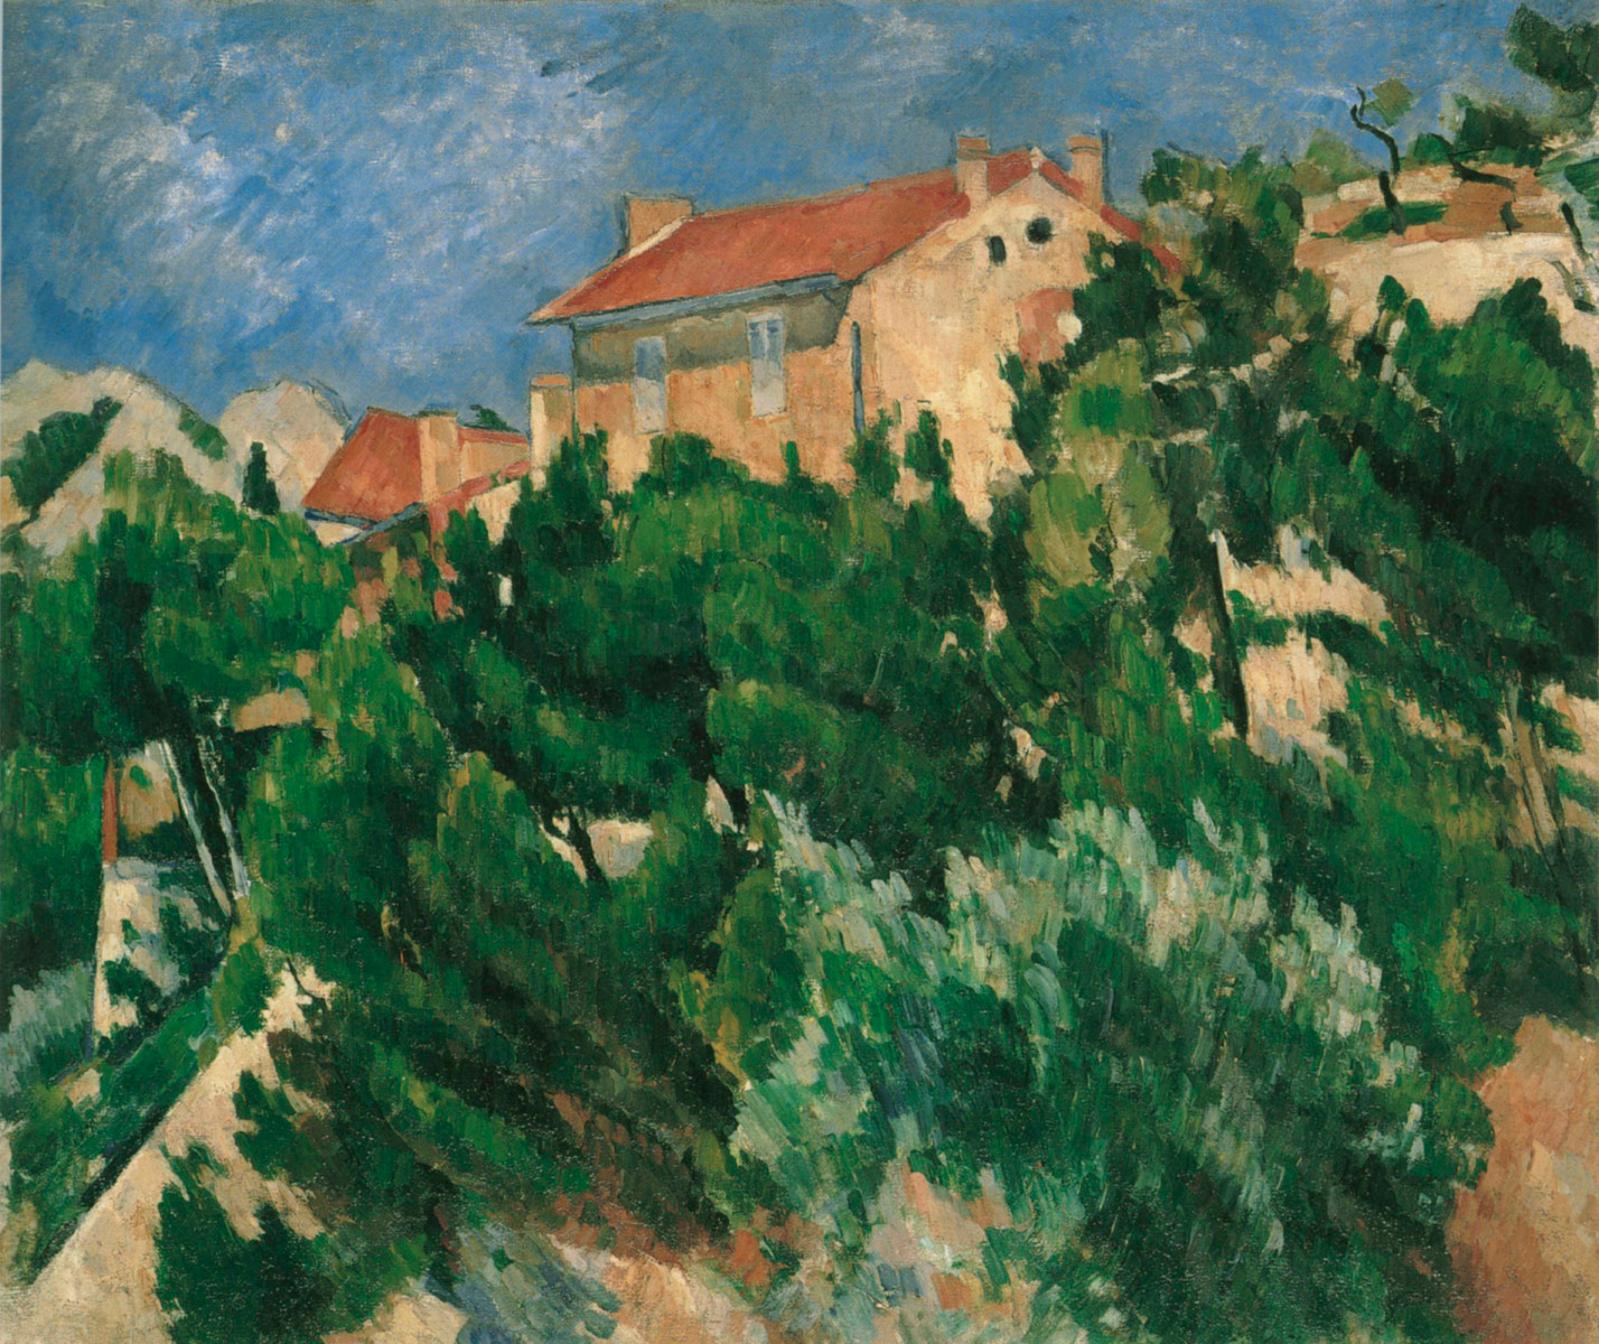 Dans l’œil de Cézanne